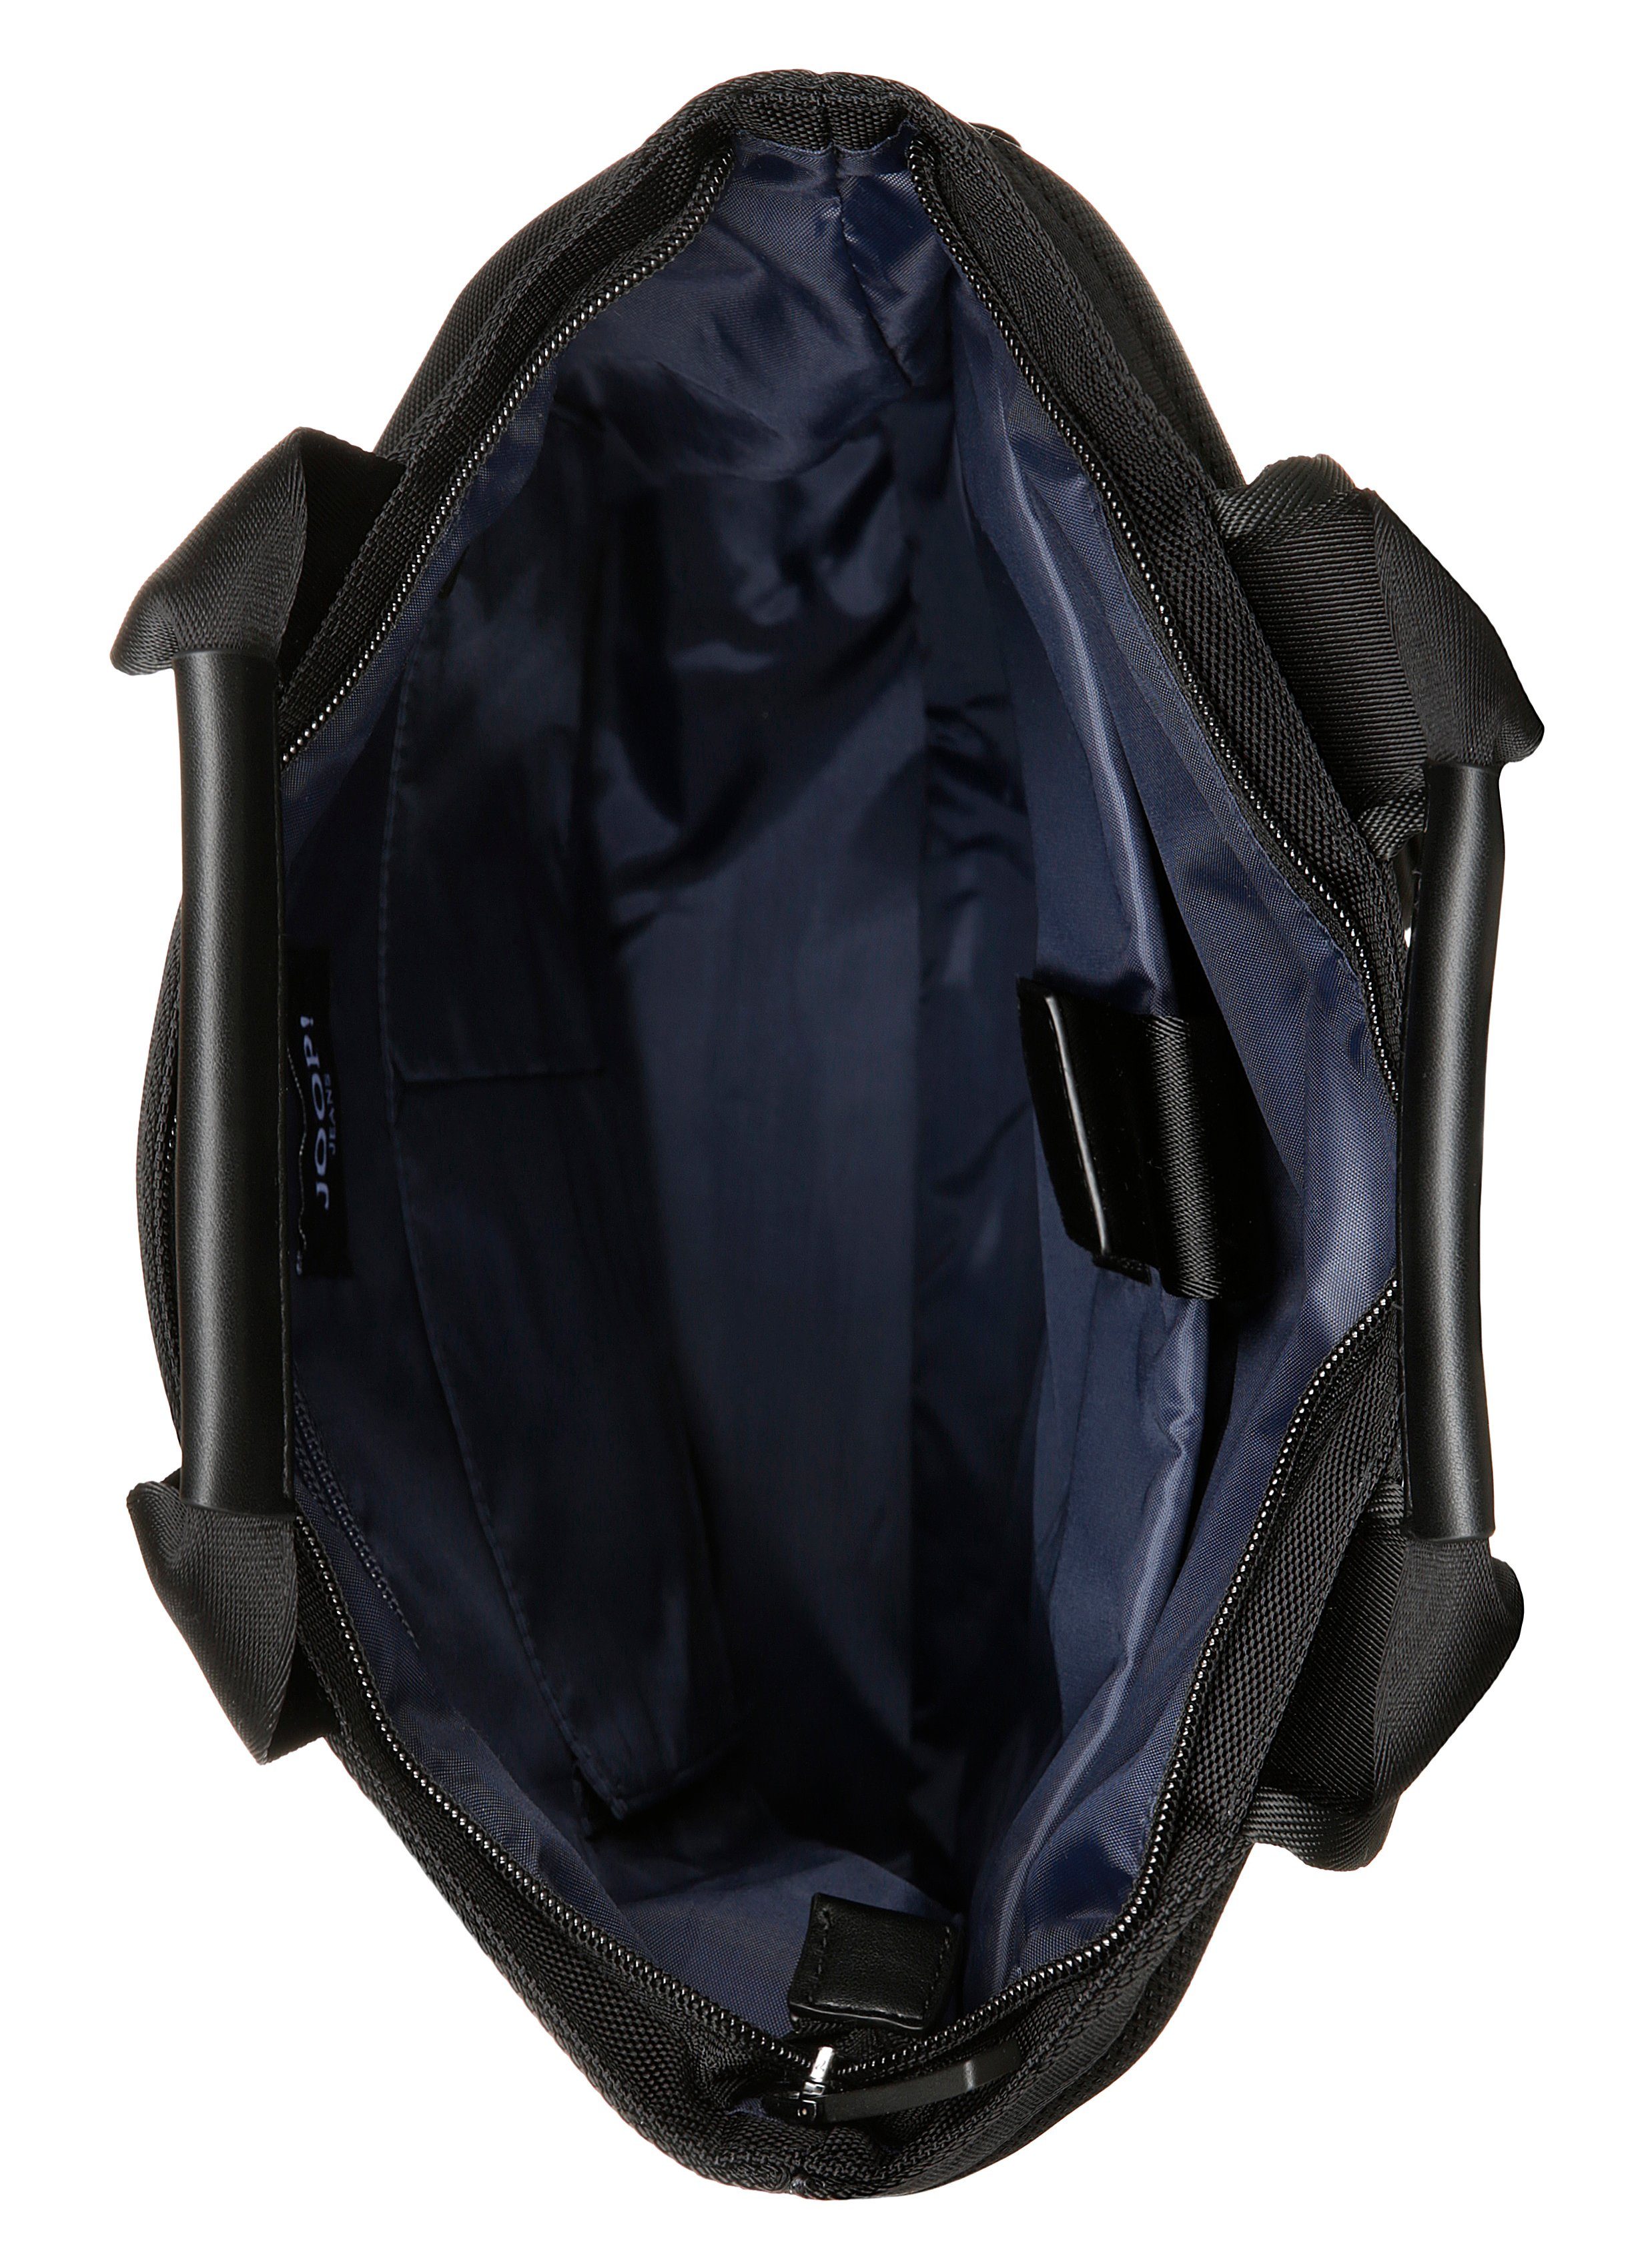 modica svz, mit black Joop Jeans Reißverschluss-Vortasche backpack Cityrucksack falk